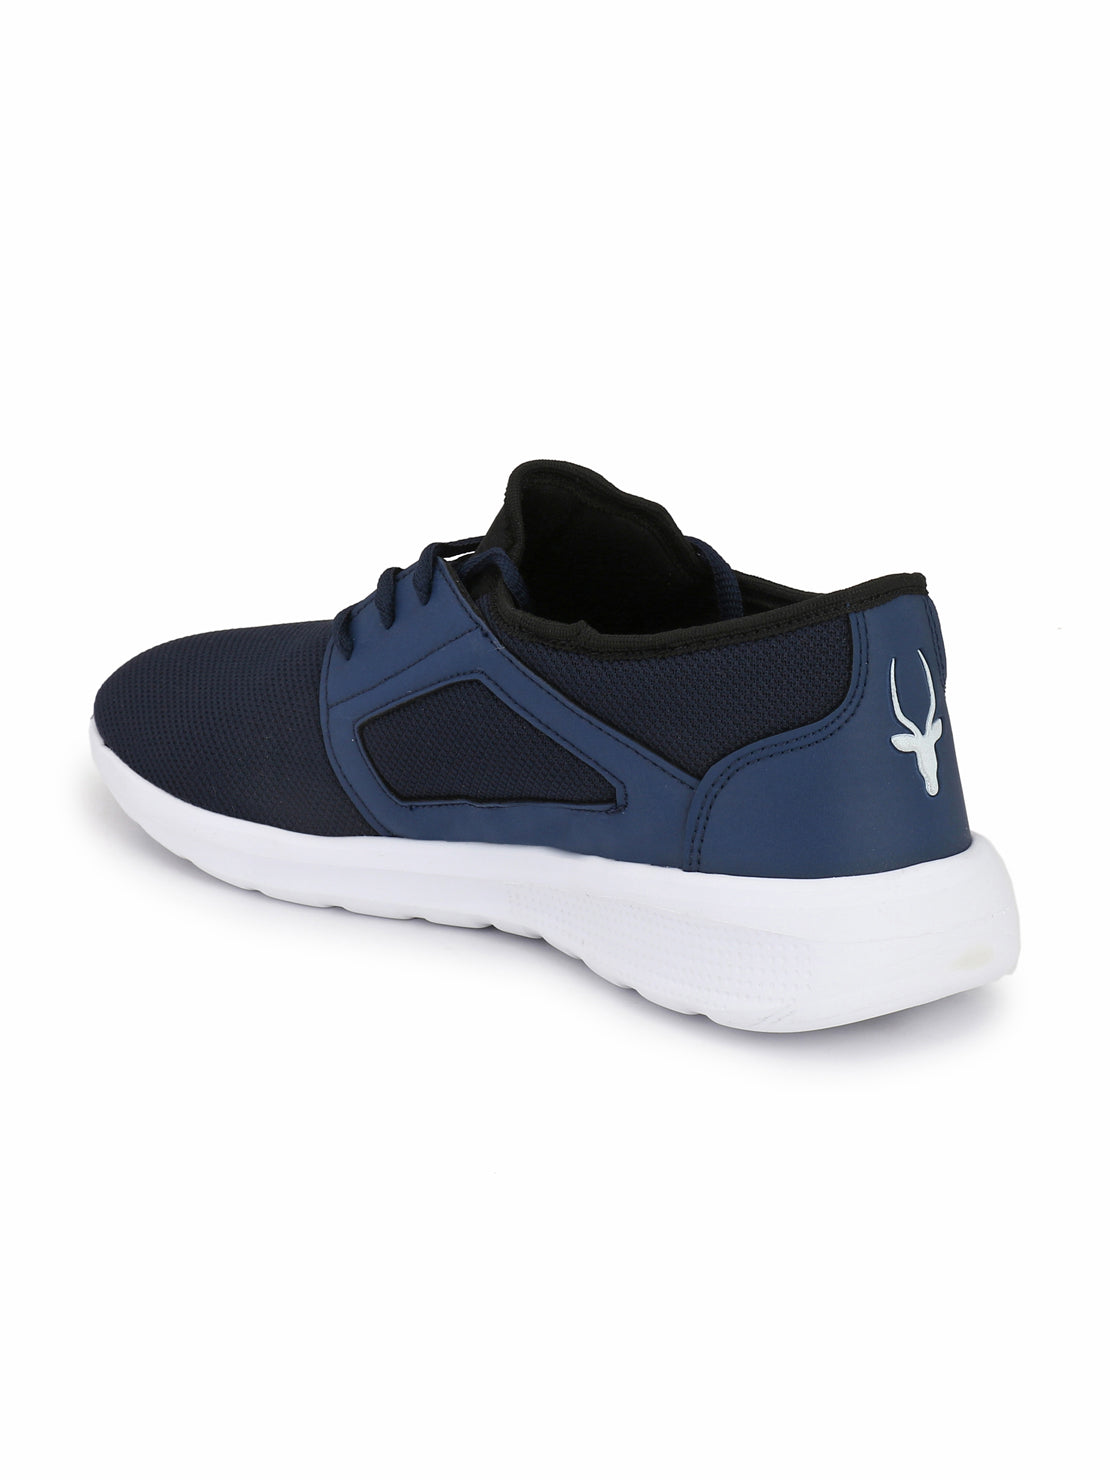 Hirolas® Men's Jezz Blue Lace Up Athleisure Sport Shoes (HRL1951CBU)